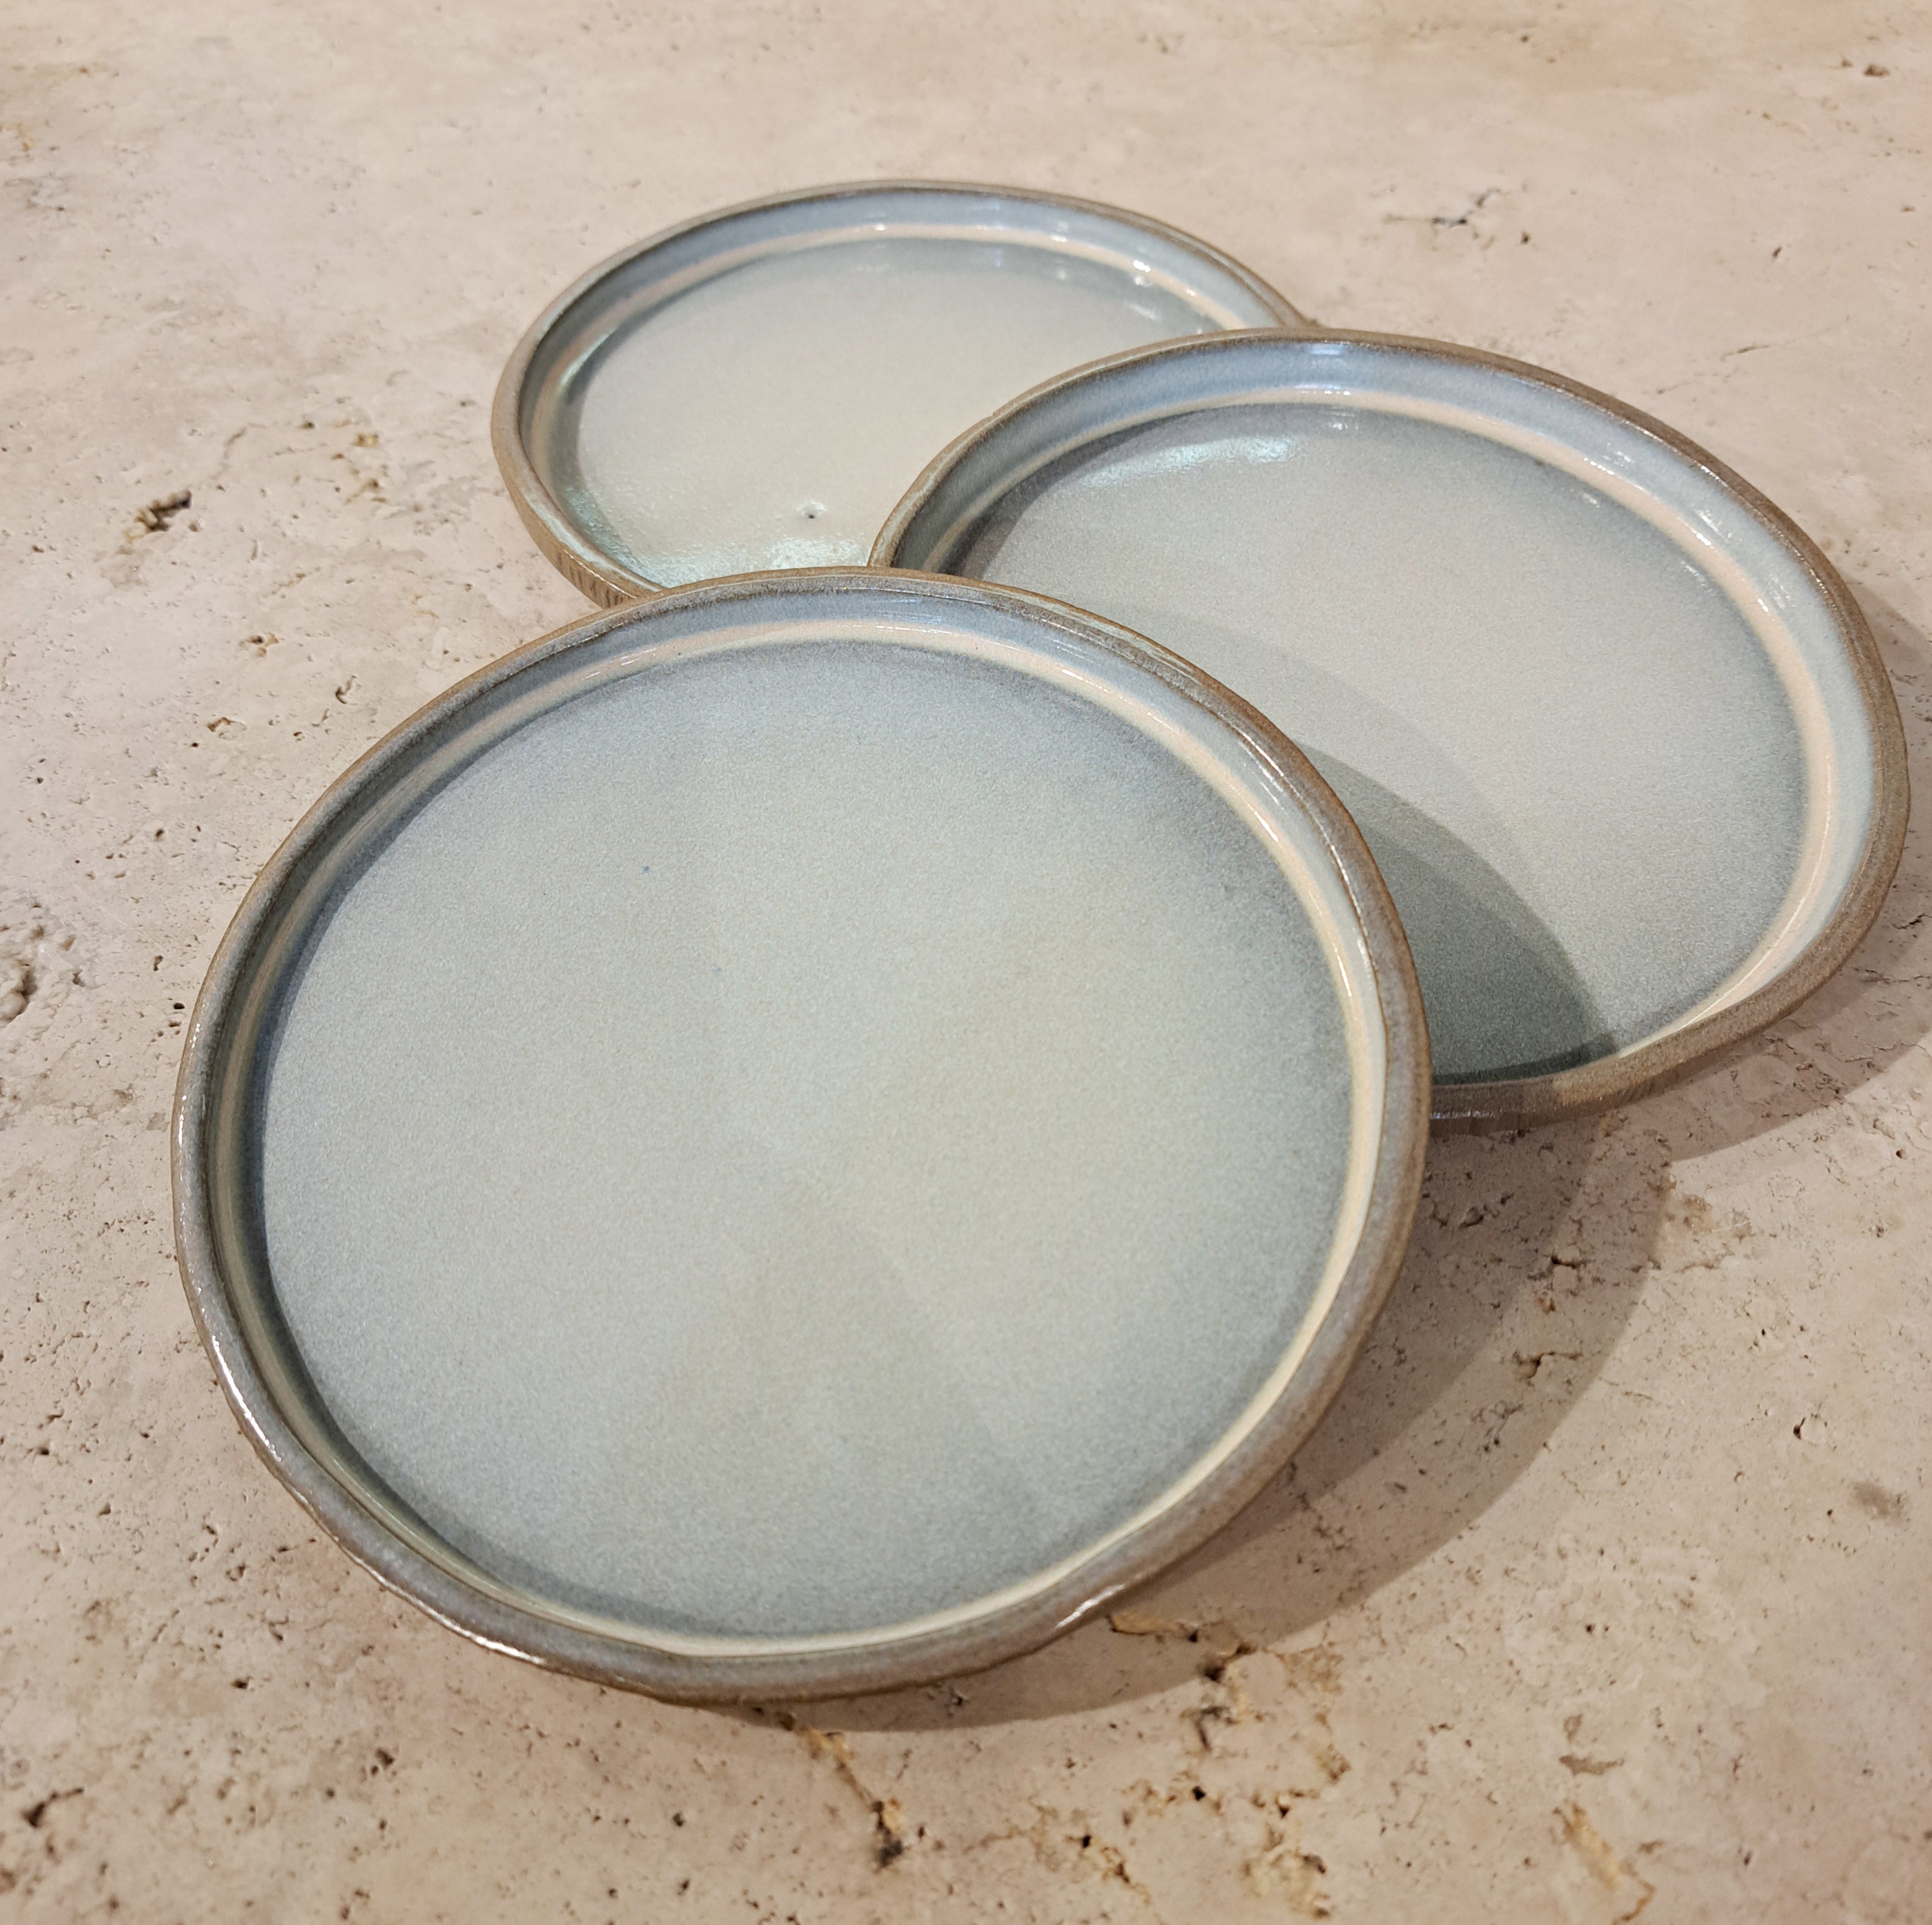 marienguyen-ceramiste-vaiselle-asiette-ceramique-grise